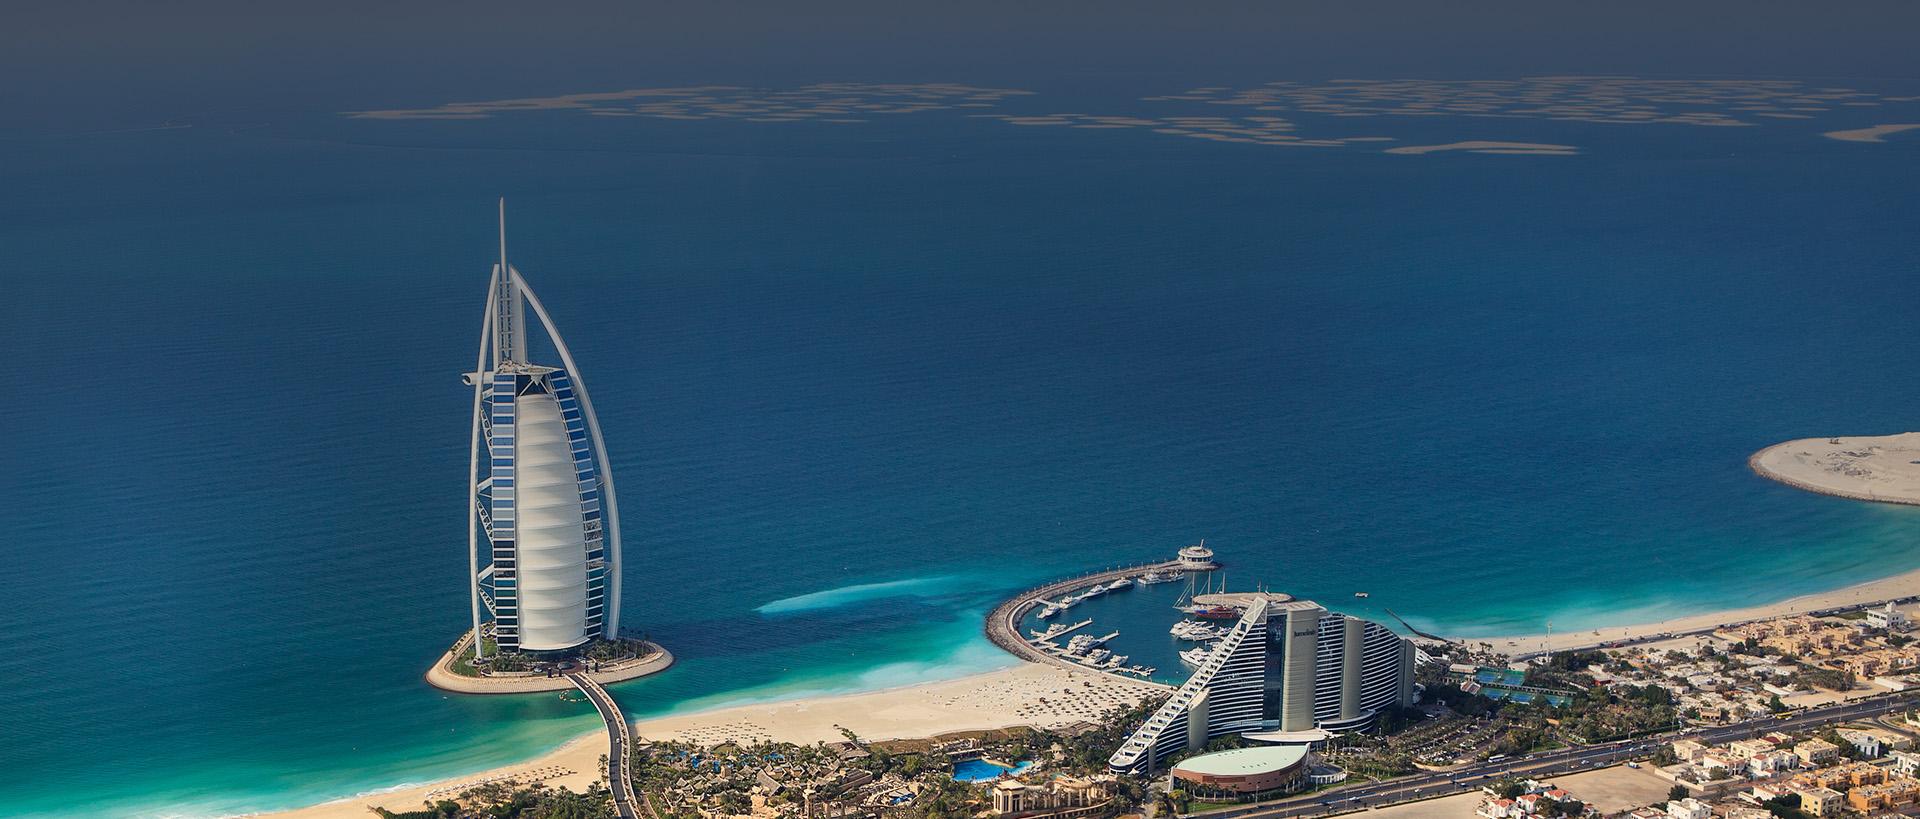 بالتفاصيل: منتجعات وفنادق الإمارات هي الأفضل سياحياً في عام 2017 